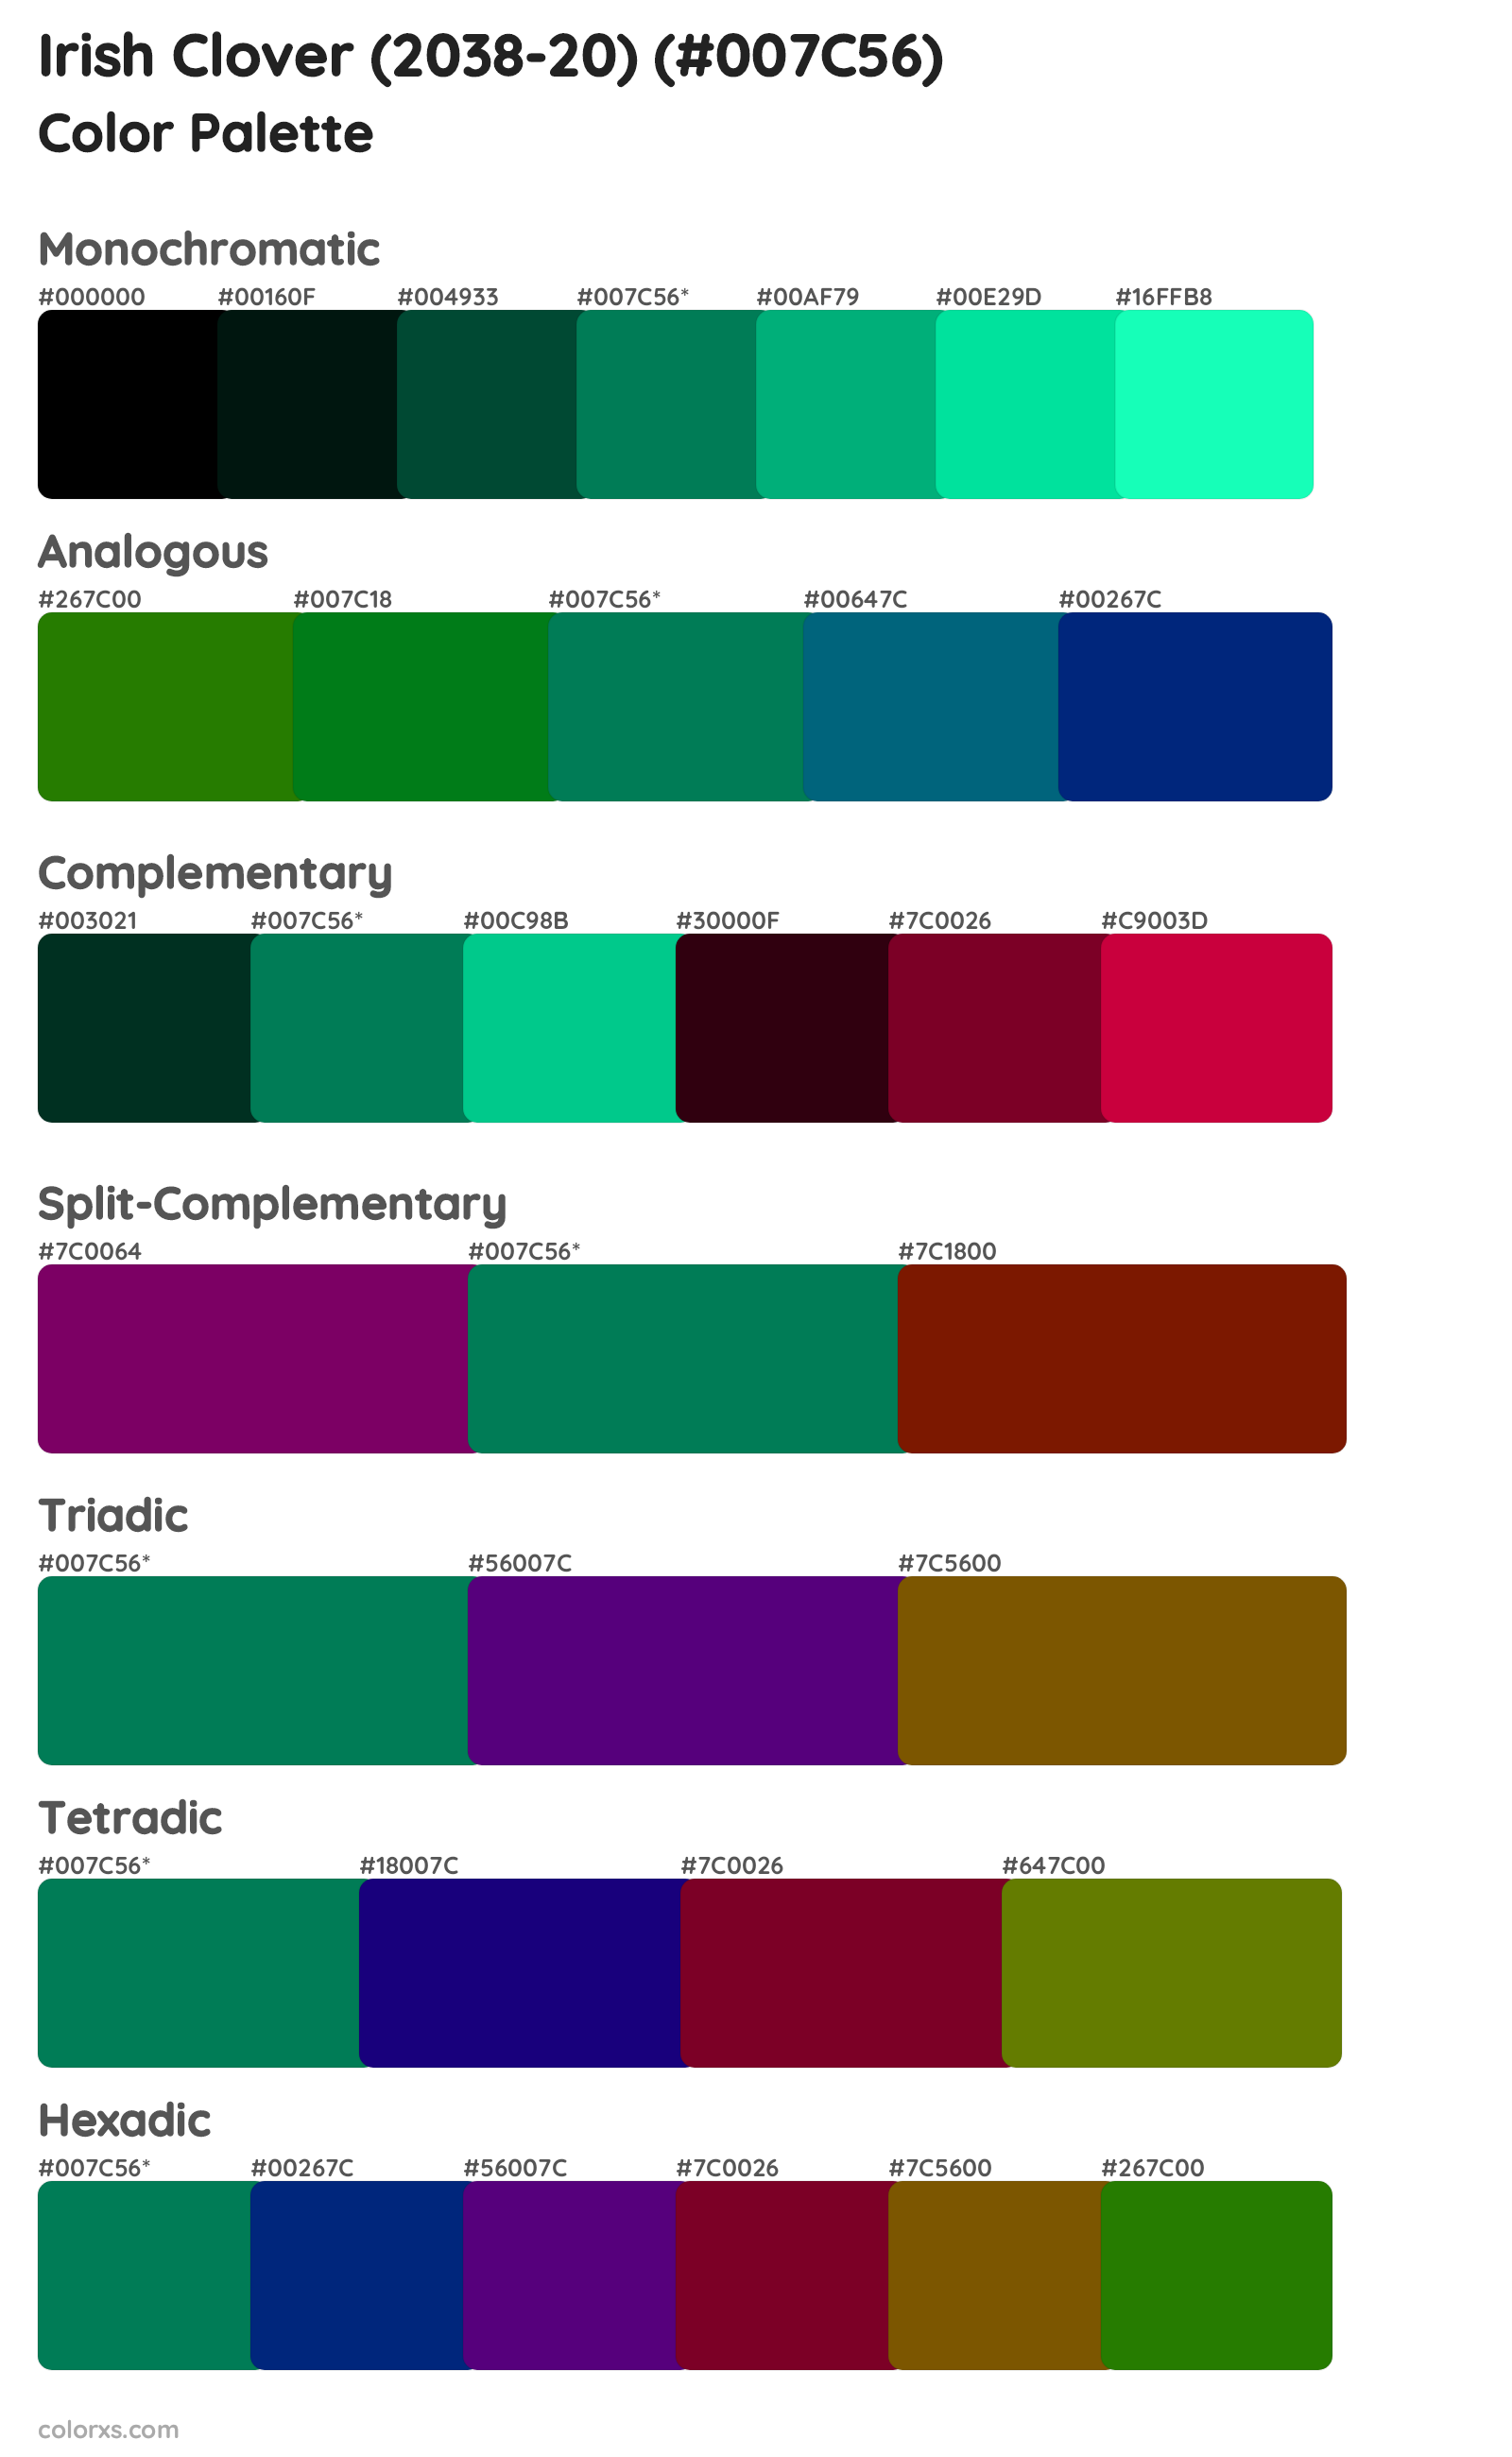 Irish Clover (2038-20) Color Scheme Palettes